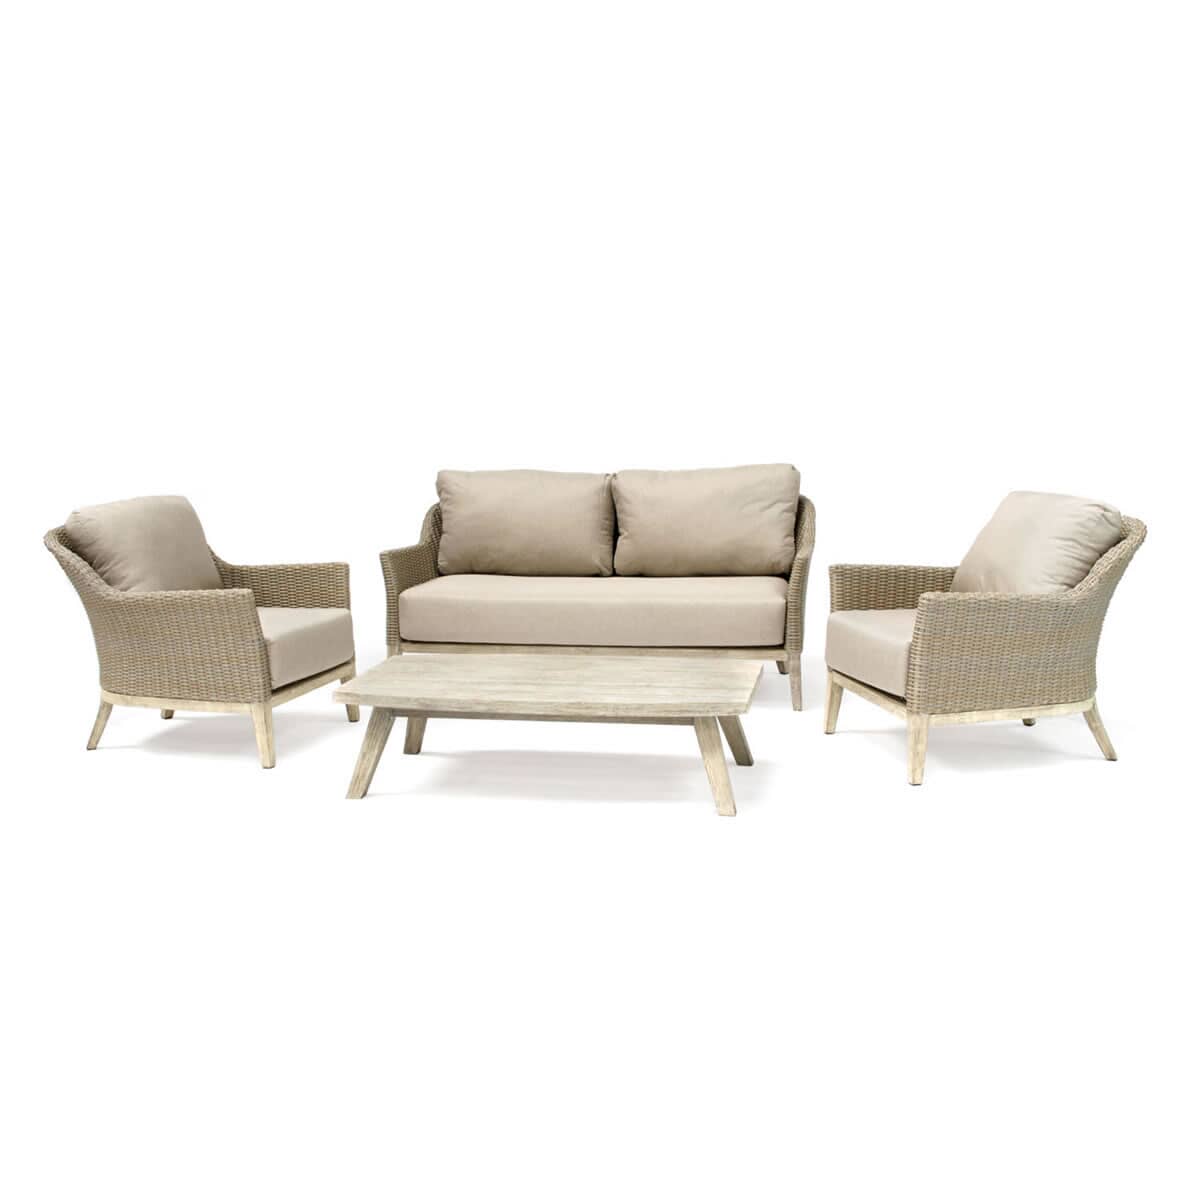 Kettler Cora Wicker - 3 Seat Sofa Lounge Set